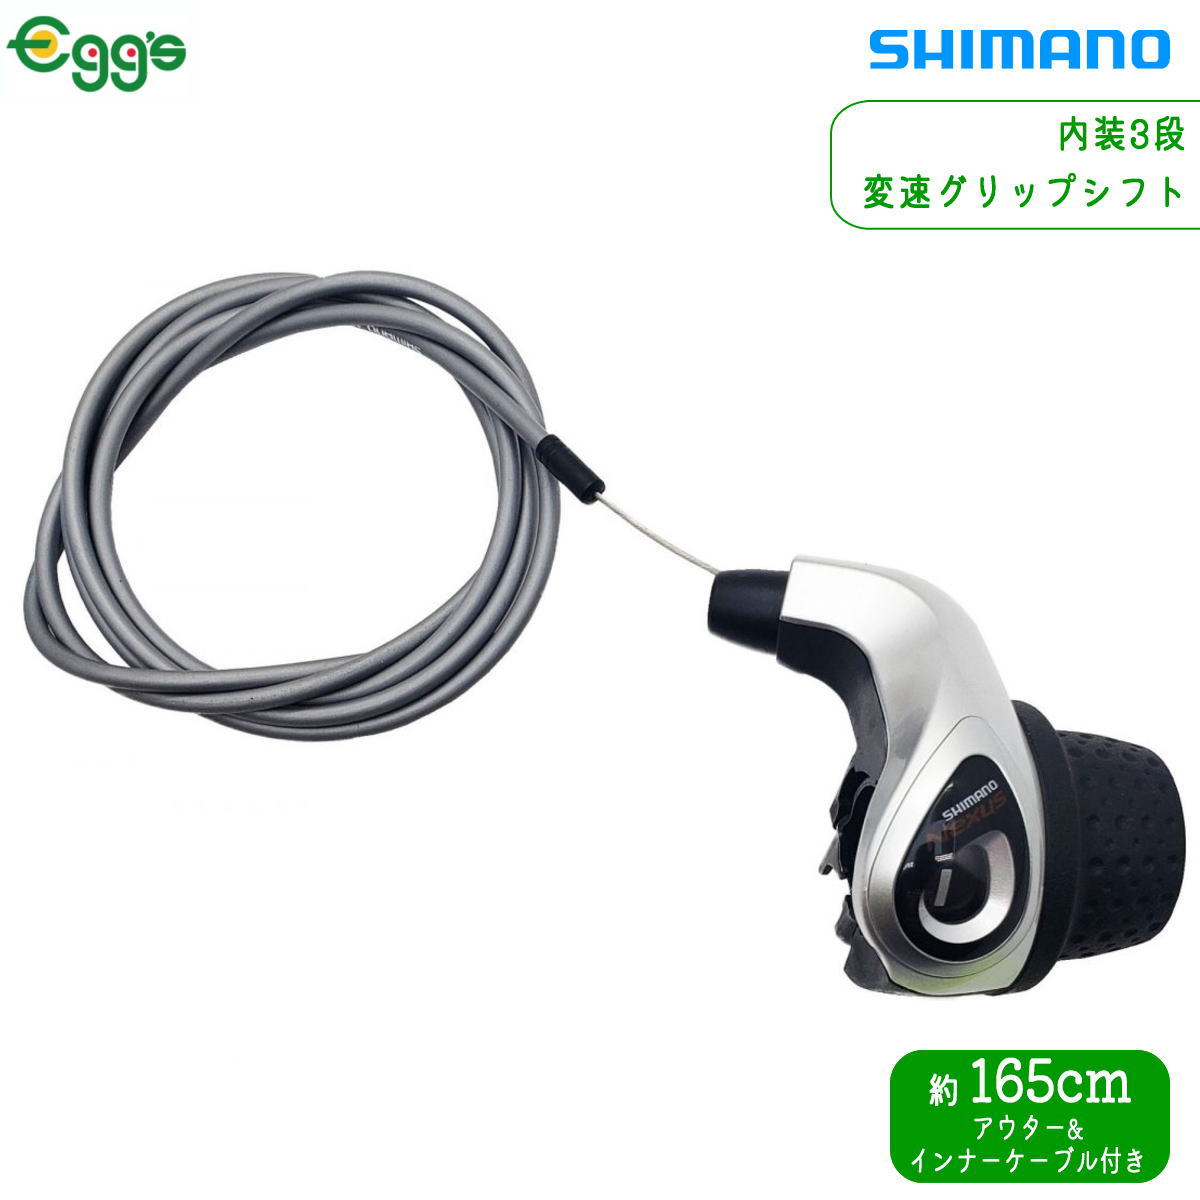 Shimano シマノ SW-RS801-E エクステンションバー用スイッチ 左右ペア ケーブル長:740mm Di2関連(EW-SD300系)